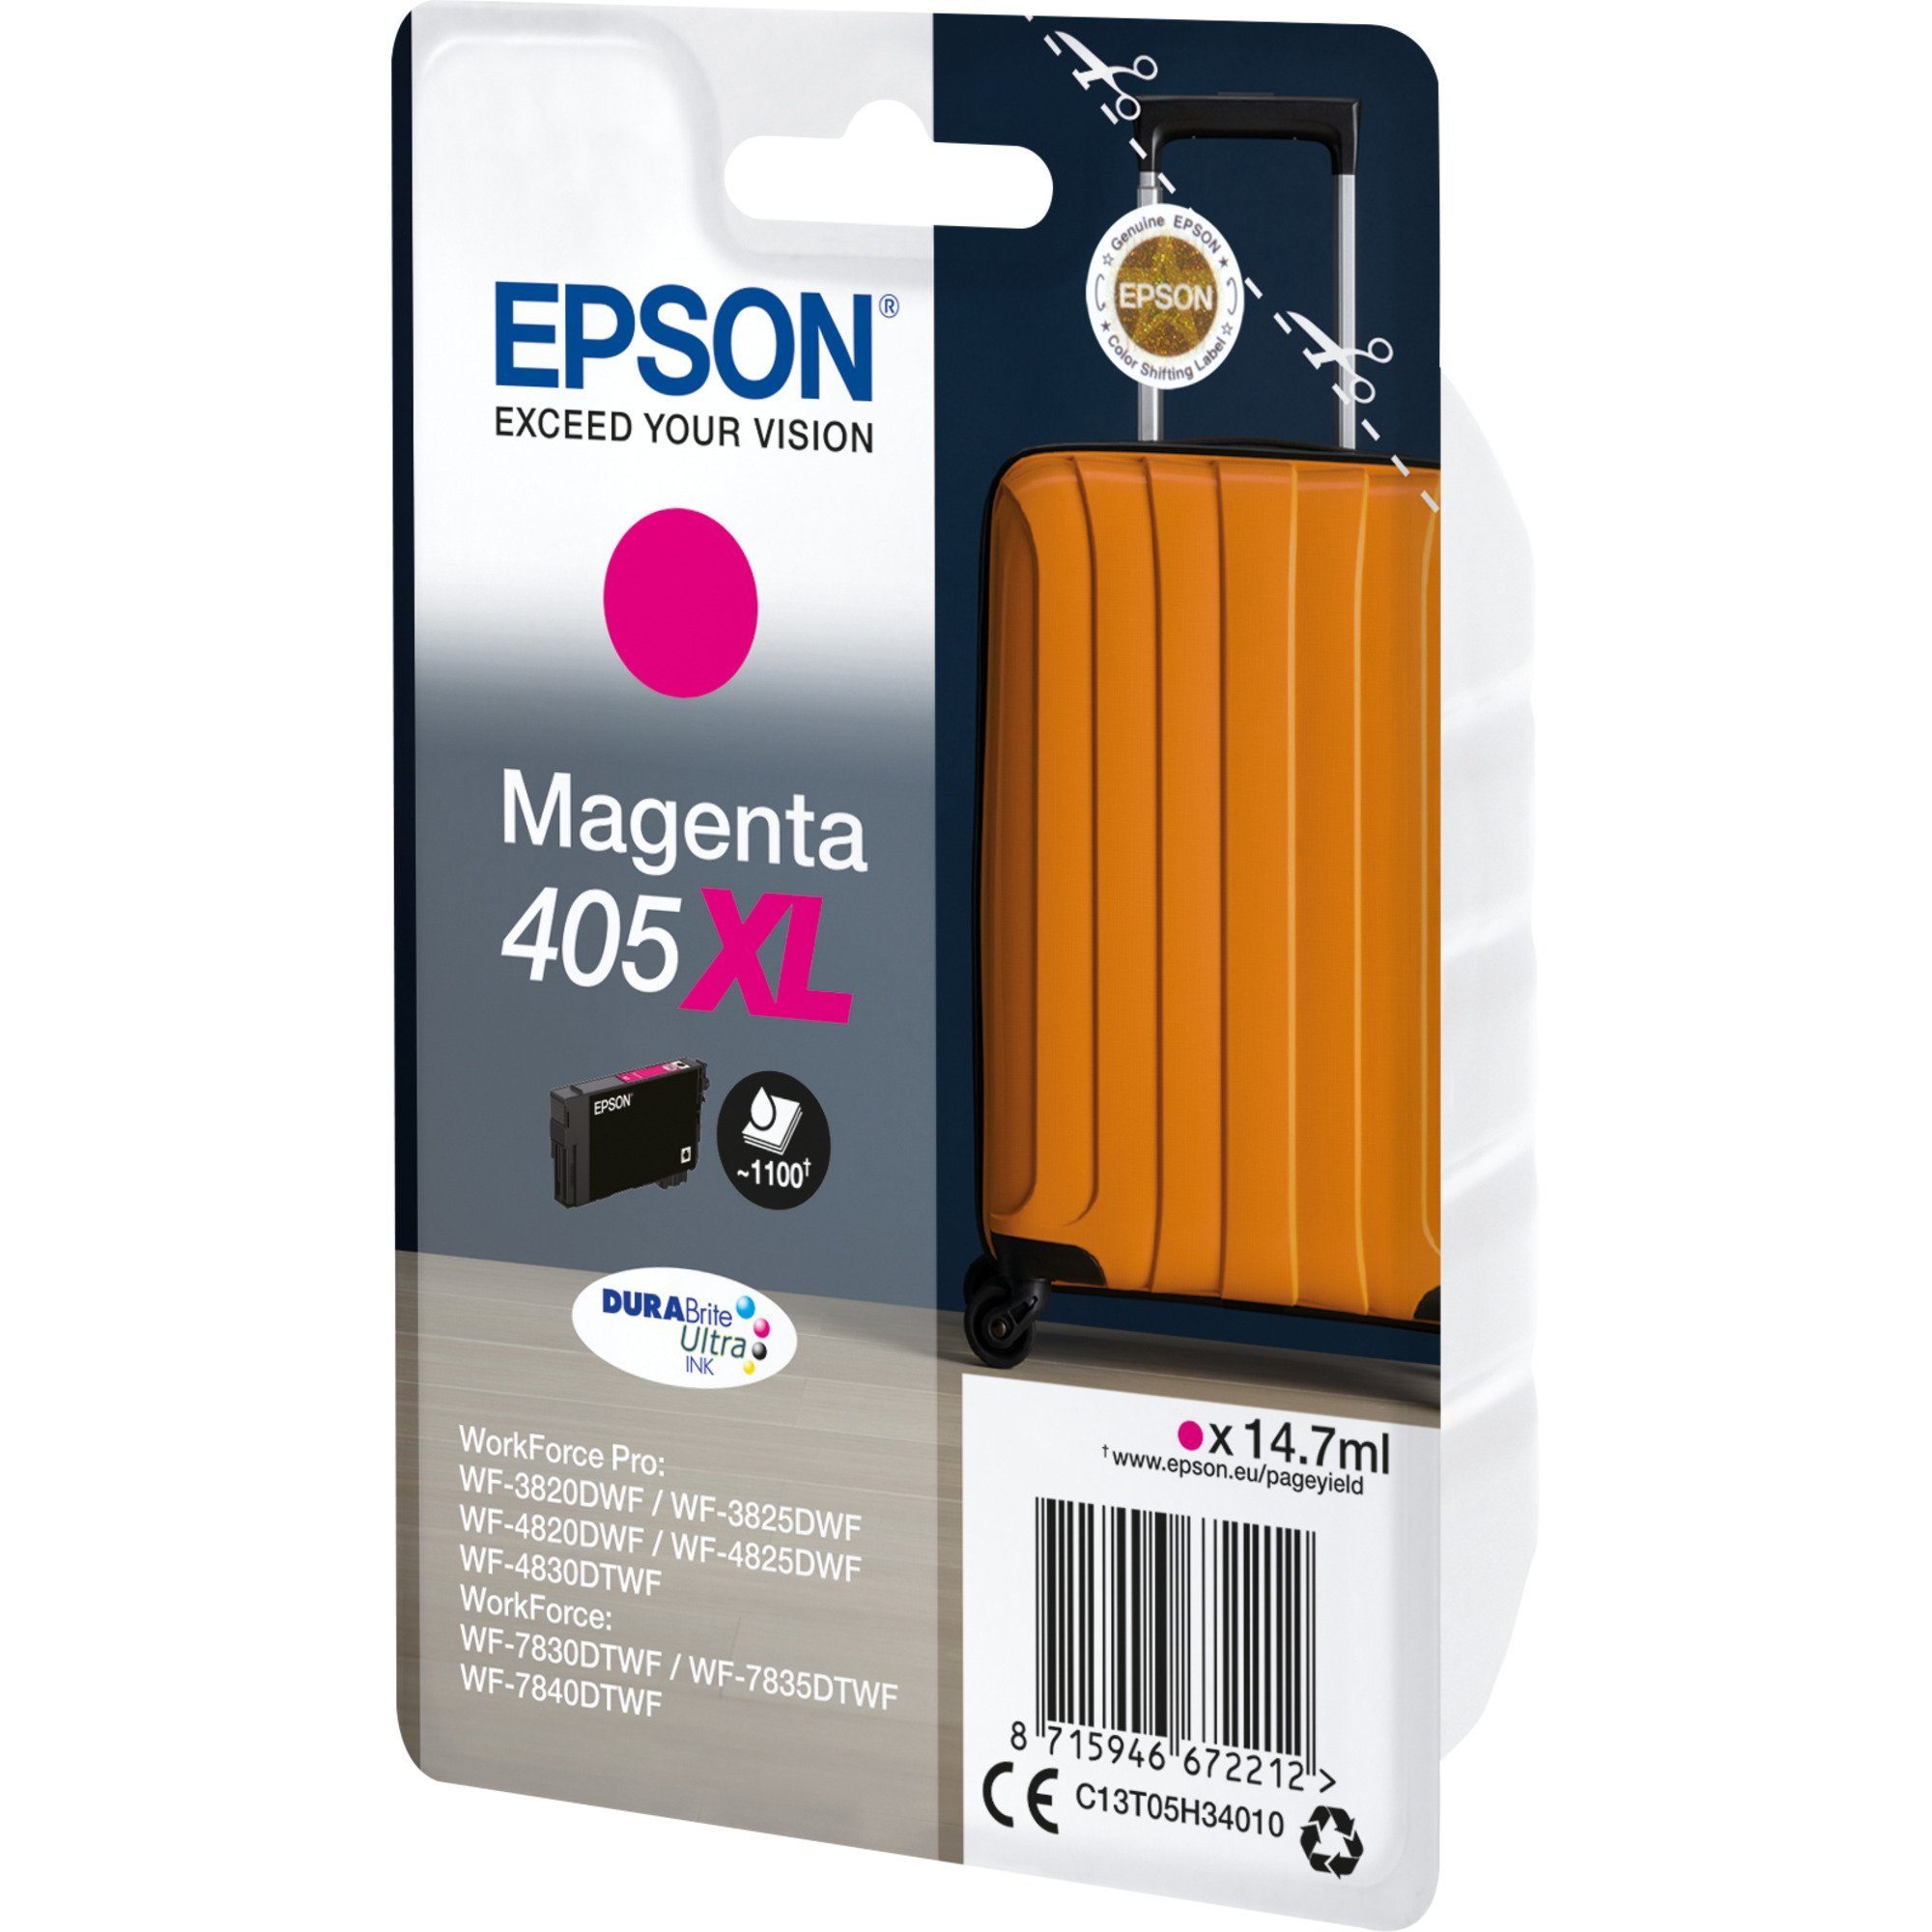 Epson Epson Tinte magenta 405XL (C13T05H34010) Tintenpatrone